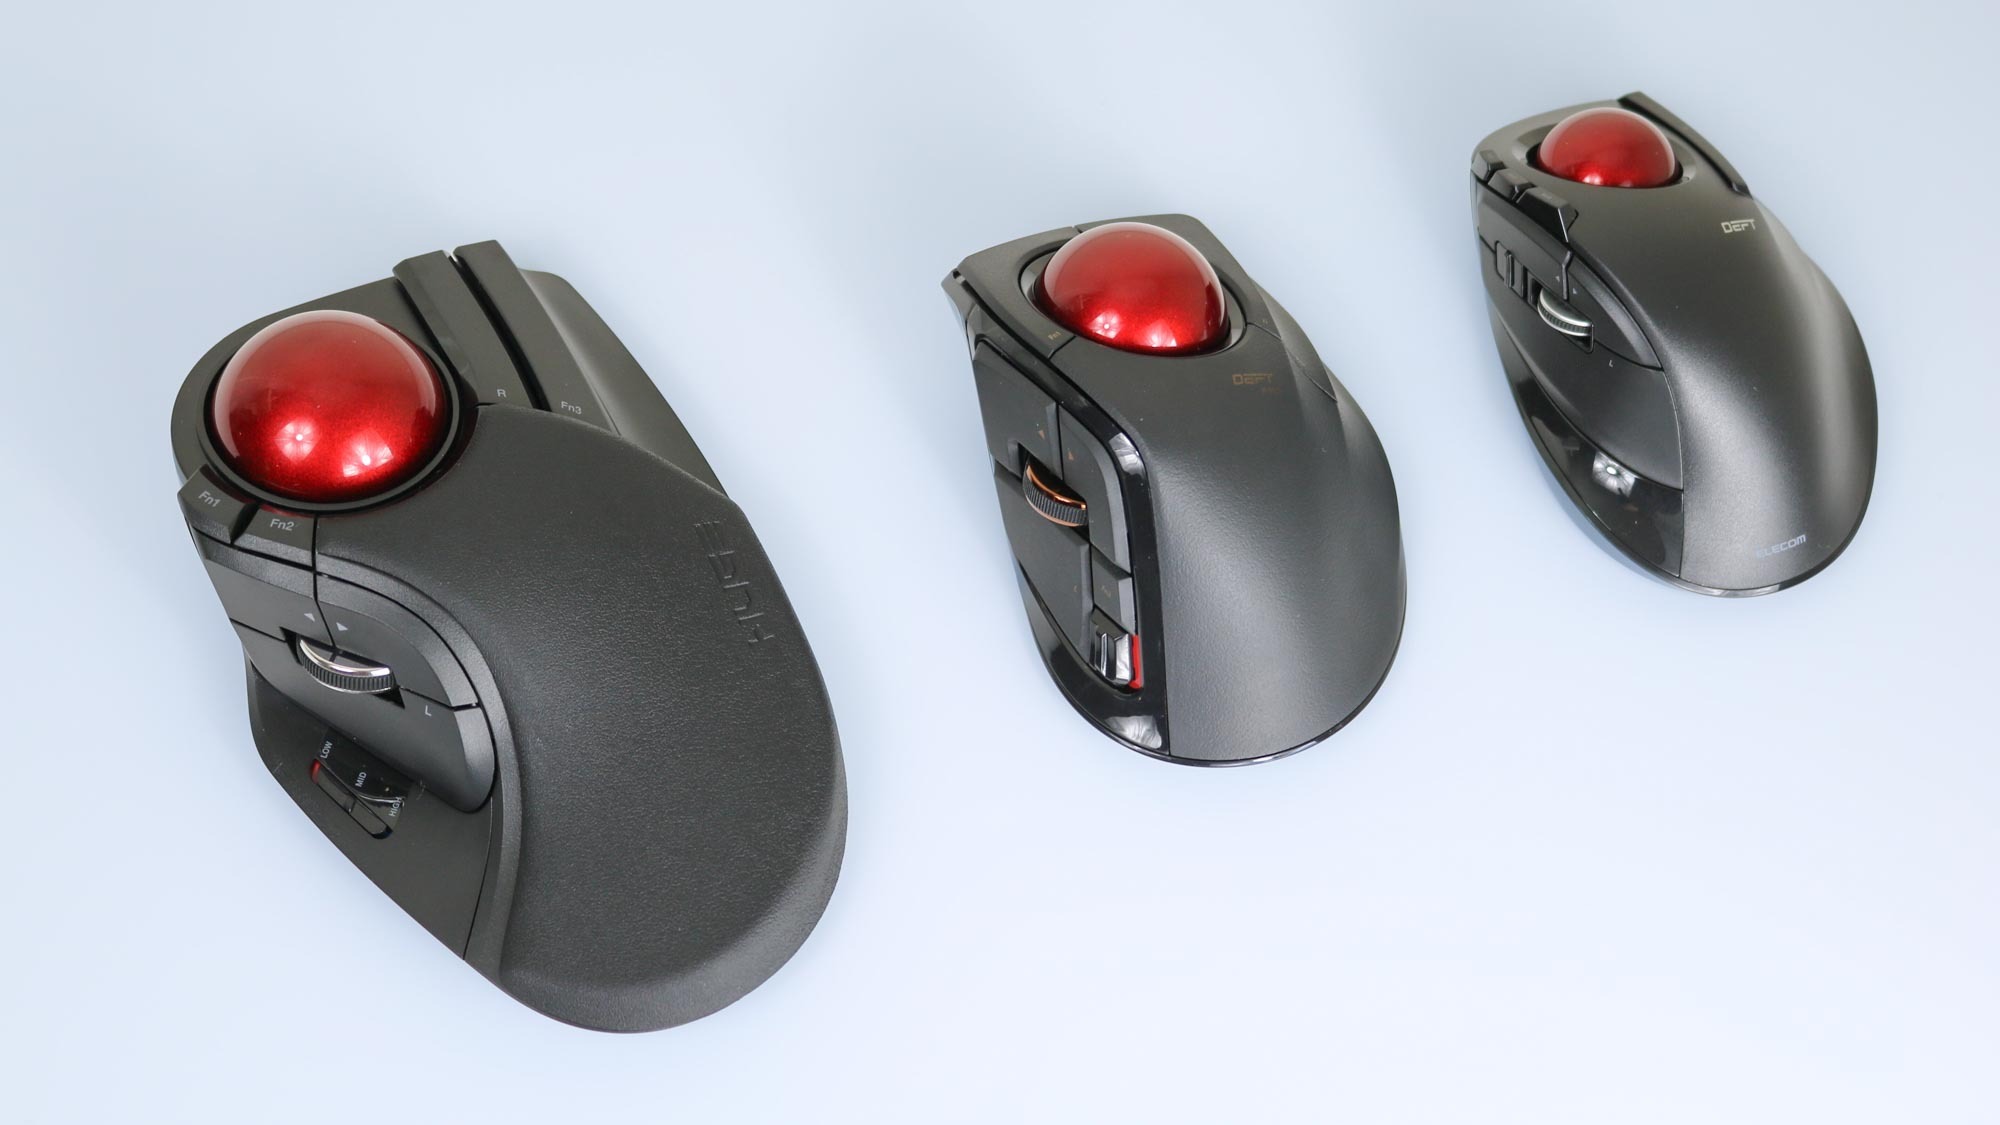 Elecom'un işaret parmağıyla çalıştırılan trackball farelerinin üç farklı modelini gösteren resim